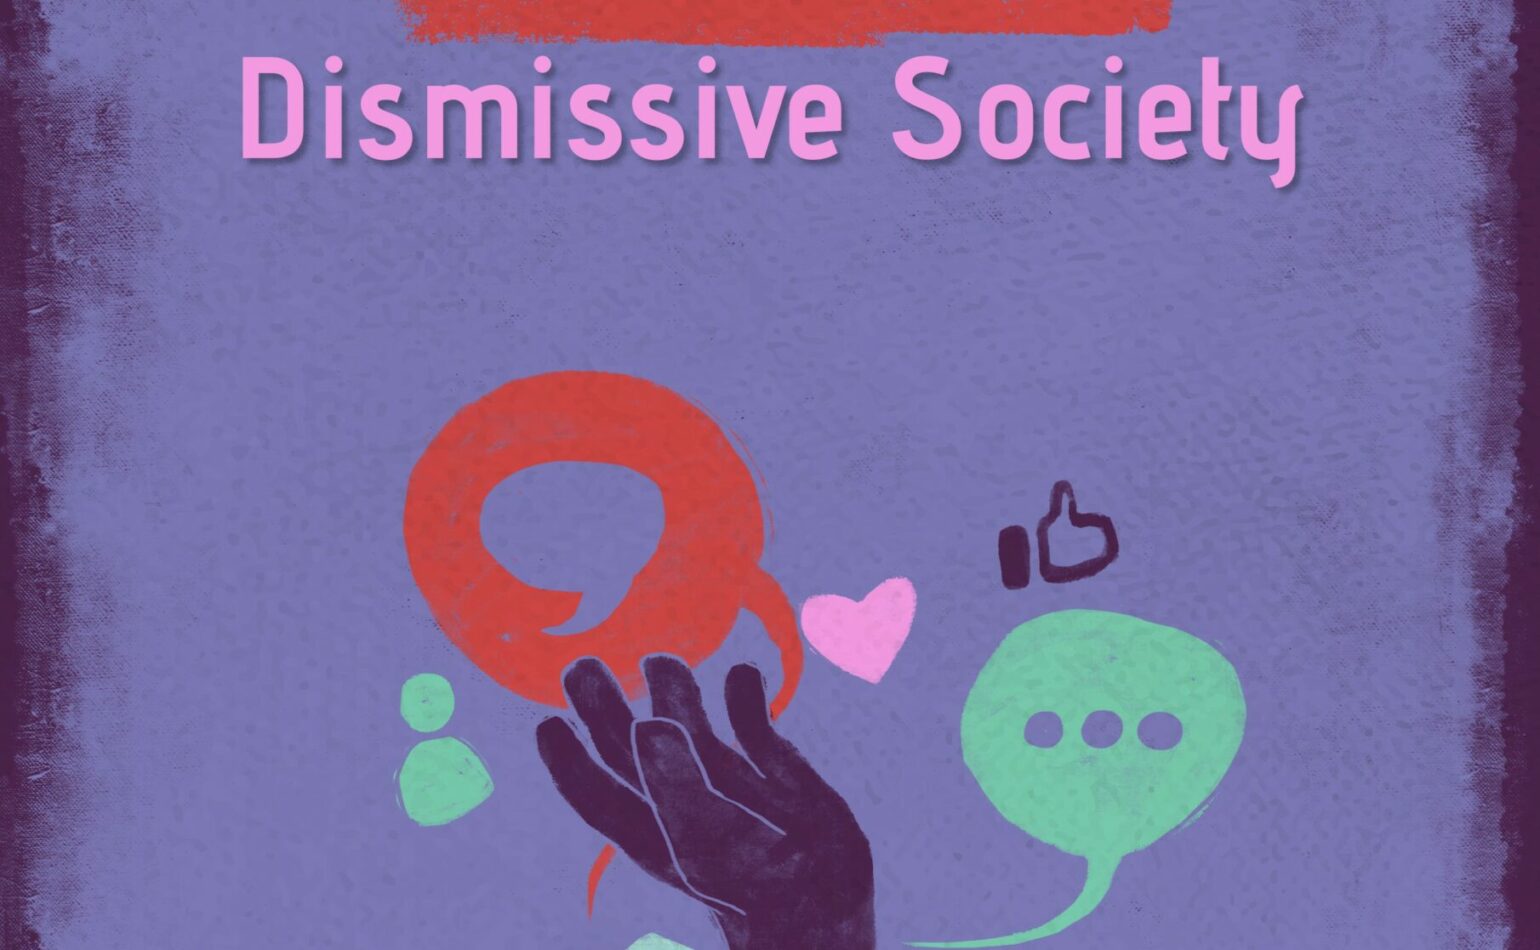 Social Media in a Mental Health Dismissive Society